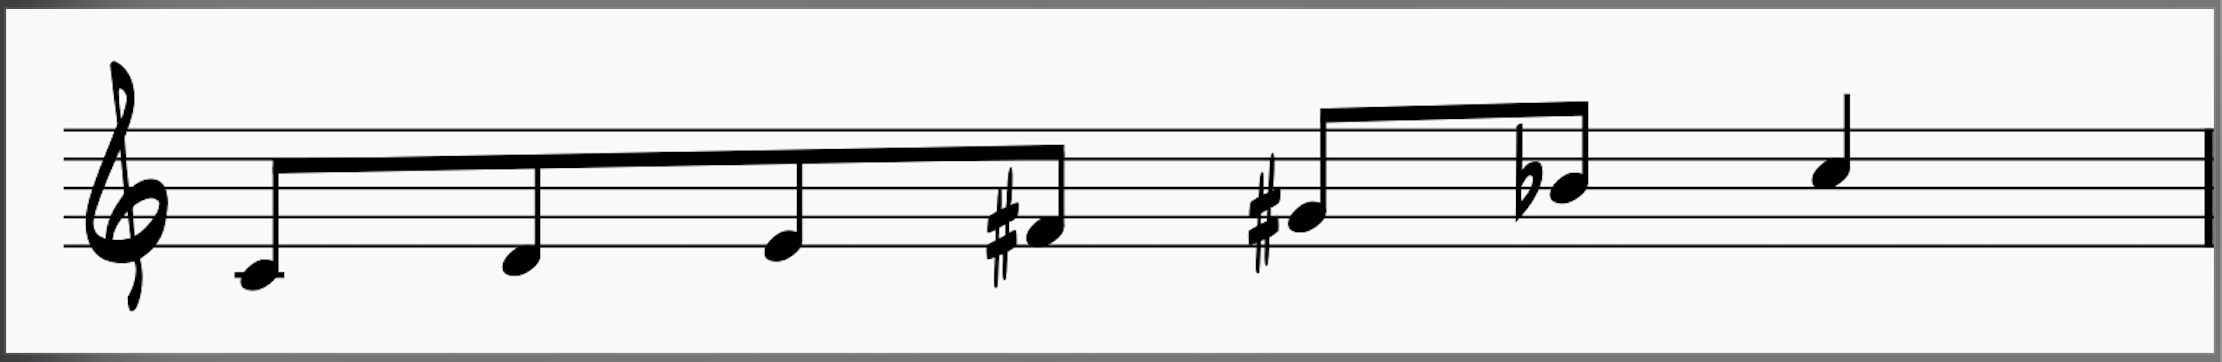 C Whole Tone Scale